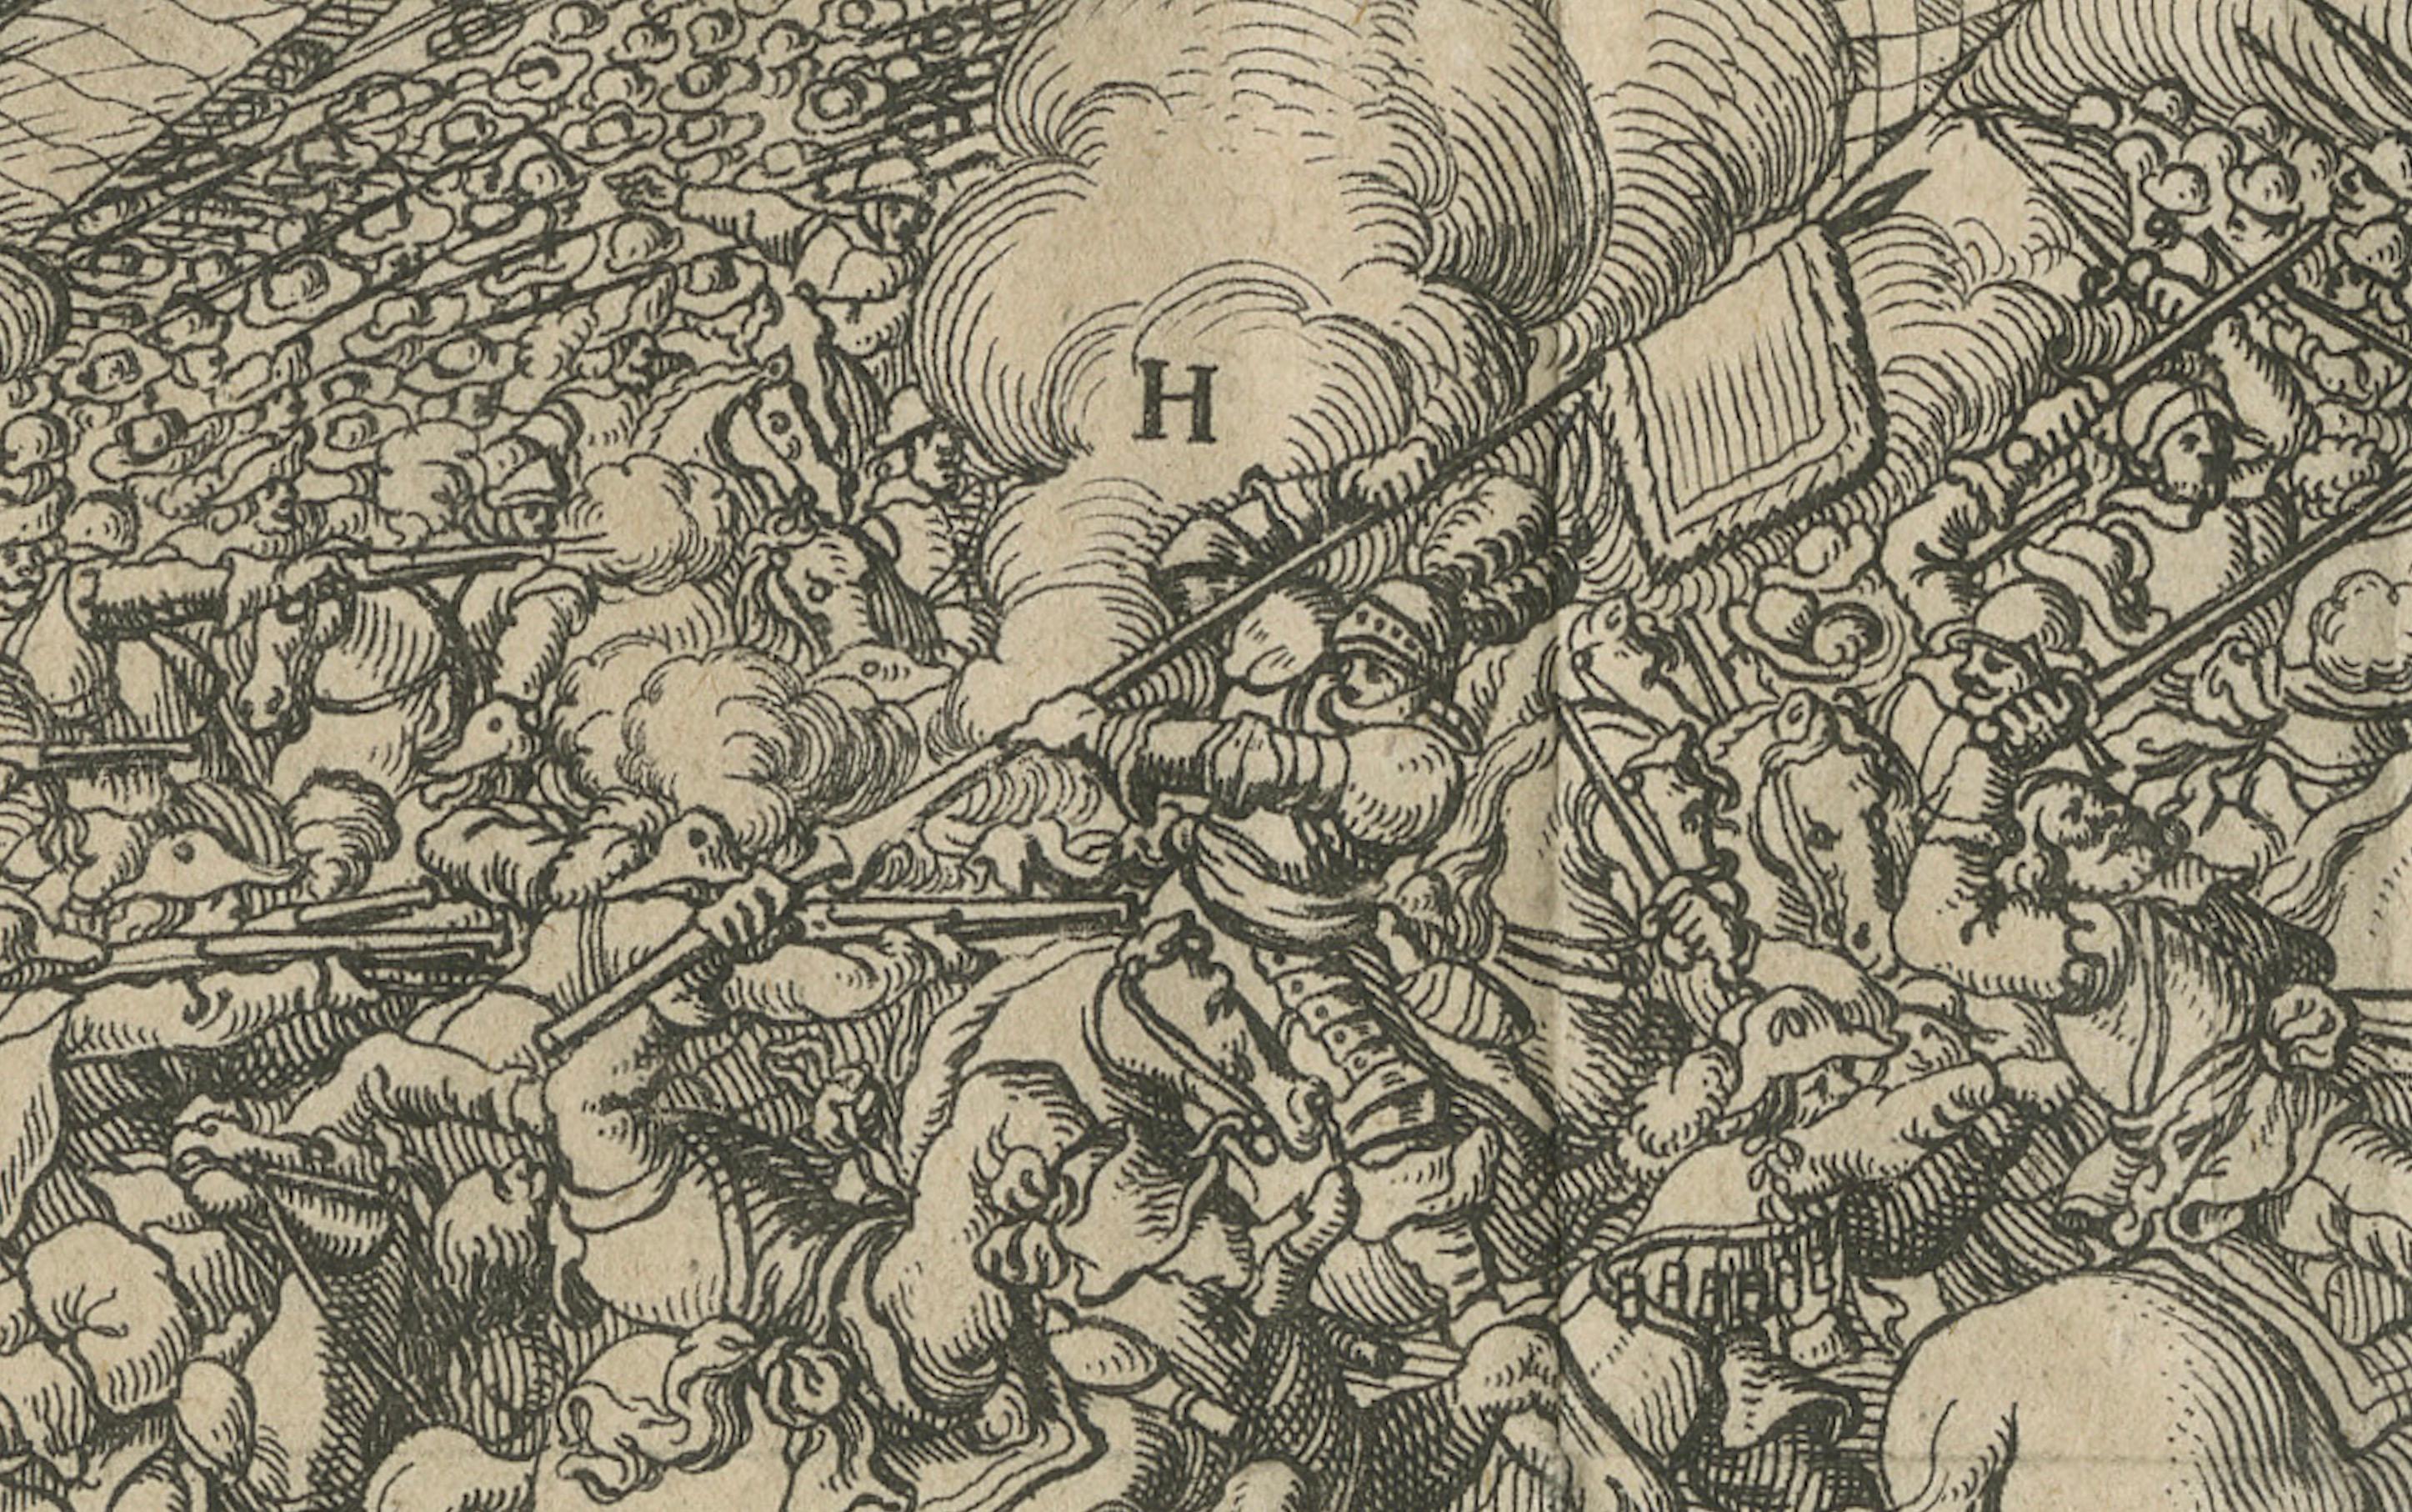 Cette œuvre magistrale témoigne de l'art de Coenraet Decker, figure illustre de l'estampe au XVIIe siècle. 

Publiée à Amsterdam par Zacharias Chatelain en 1730, cette pièce gravée antique originale provient de la compilation estimée